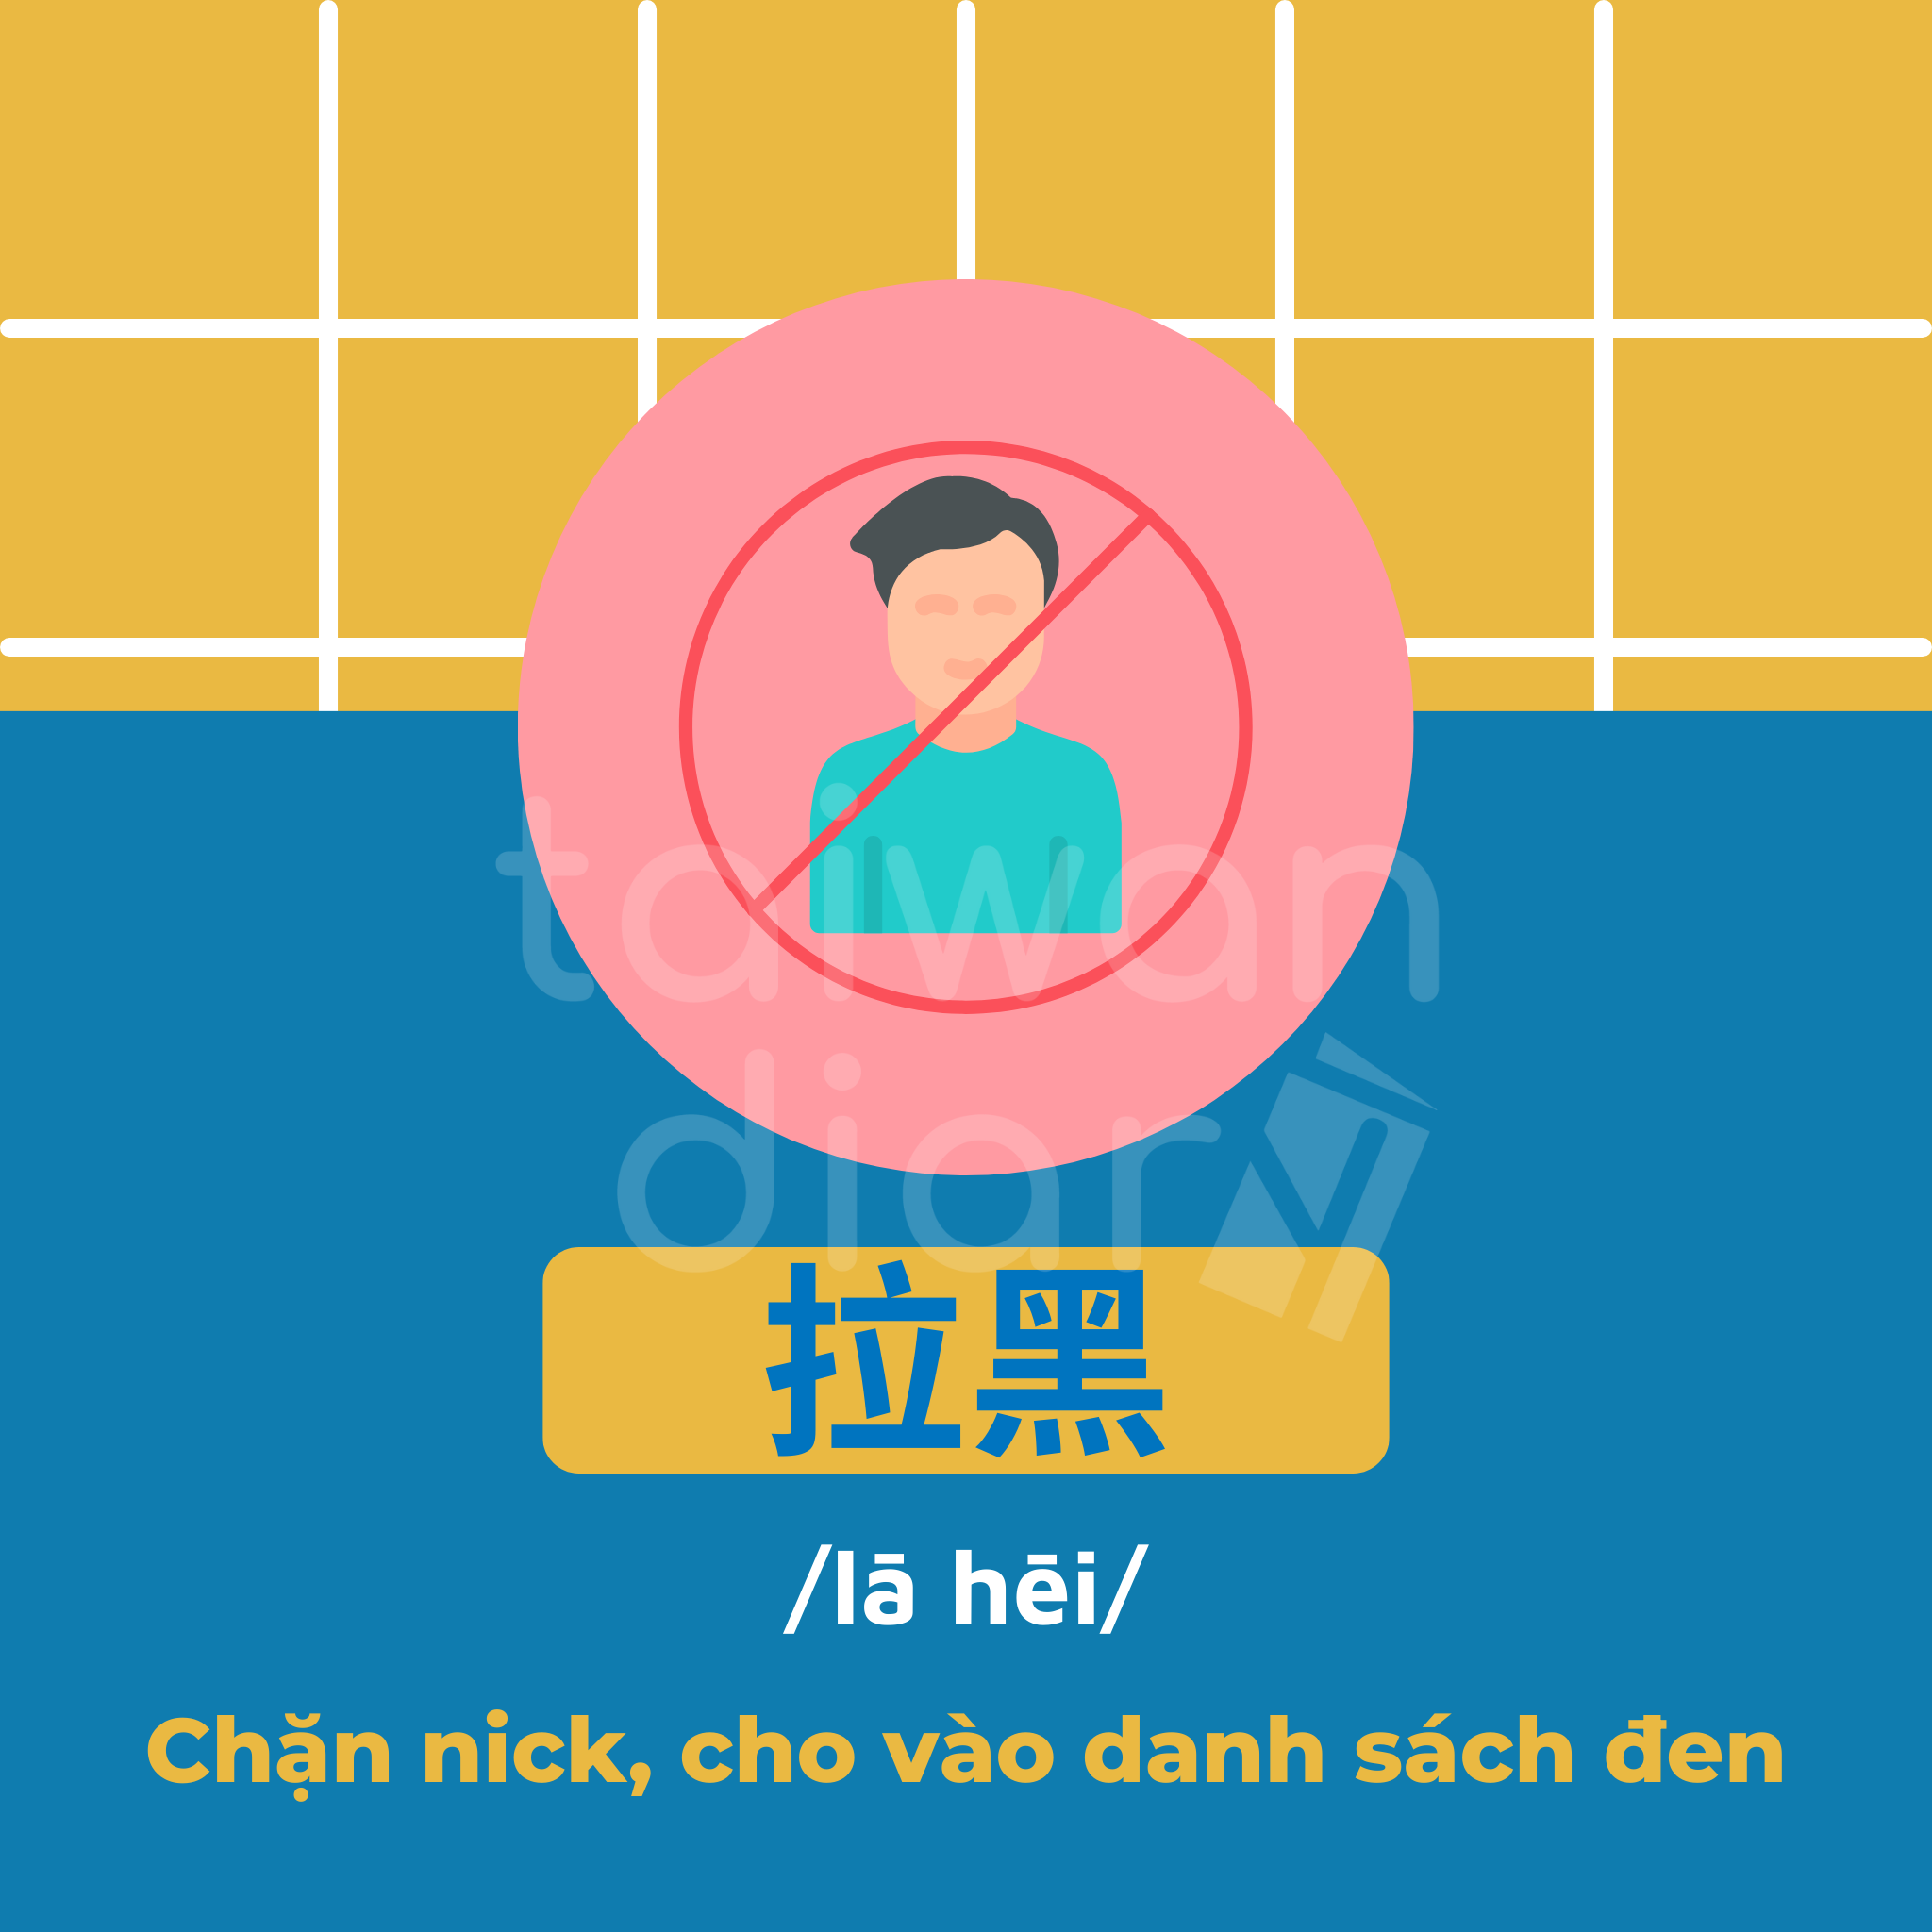 Từ lóng tiếng Trung phồn thể ngôn ngữ mạng